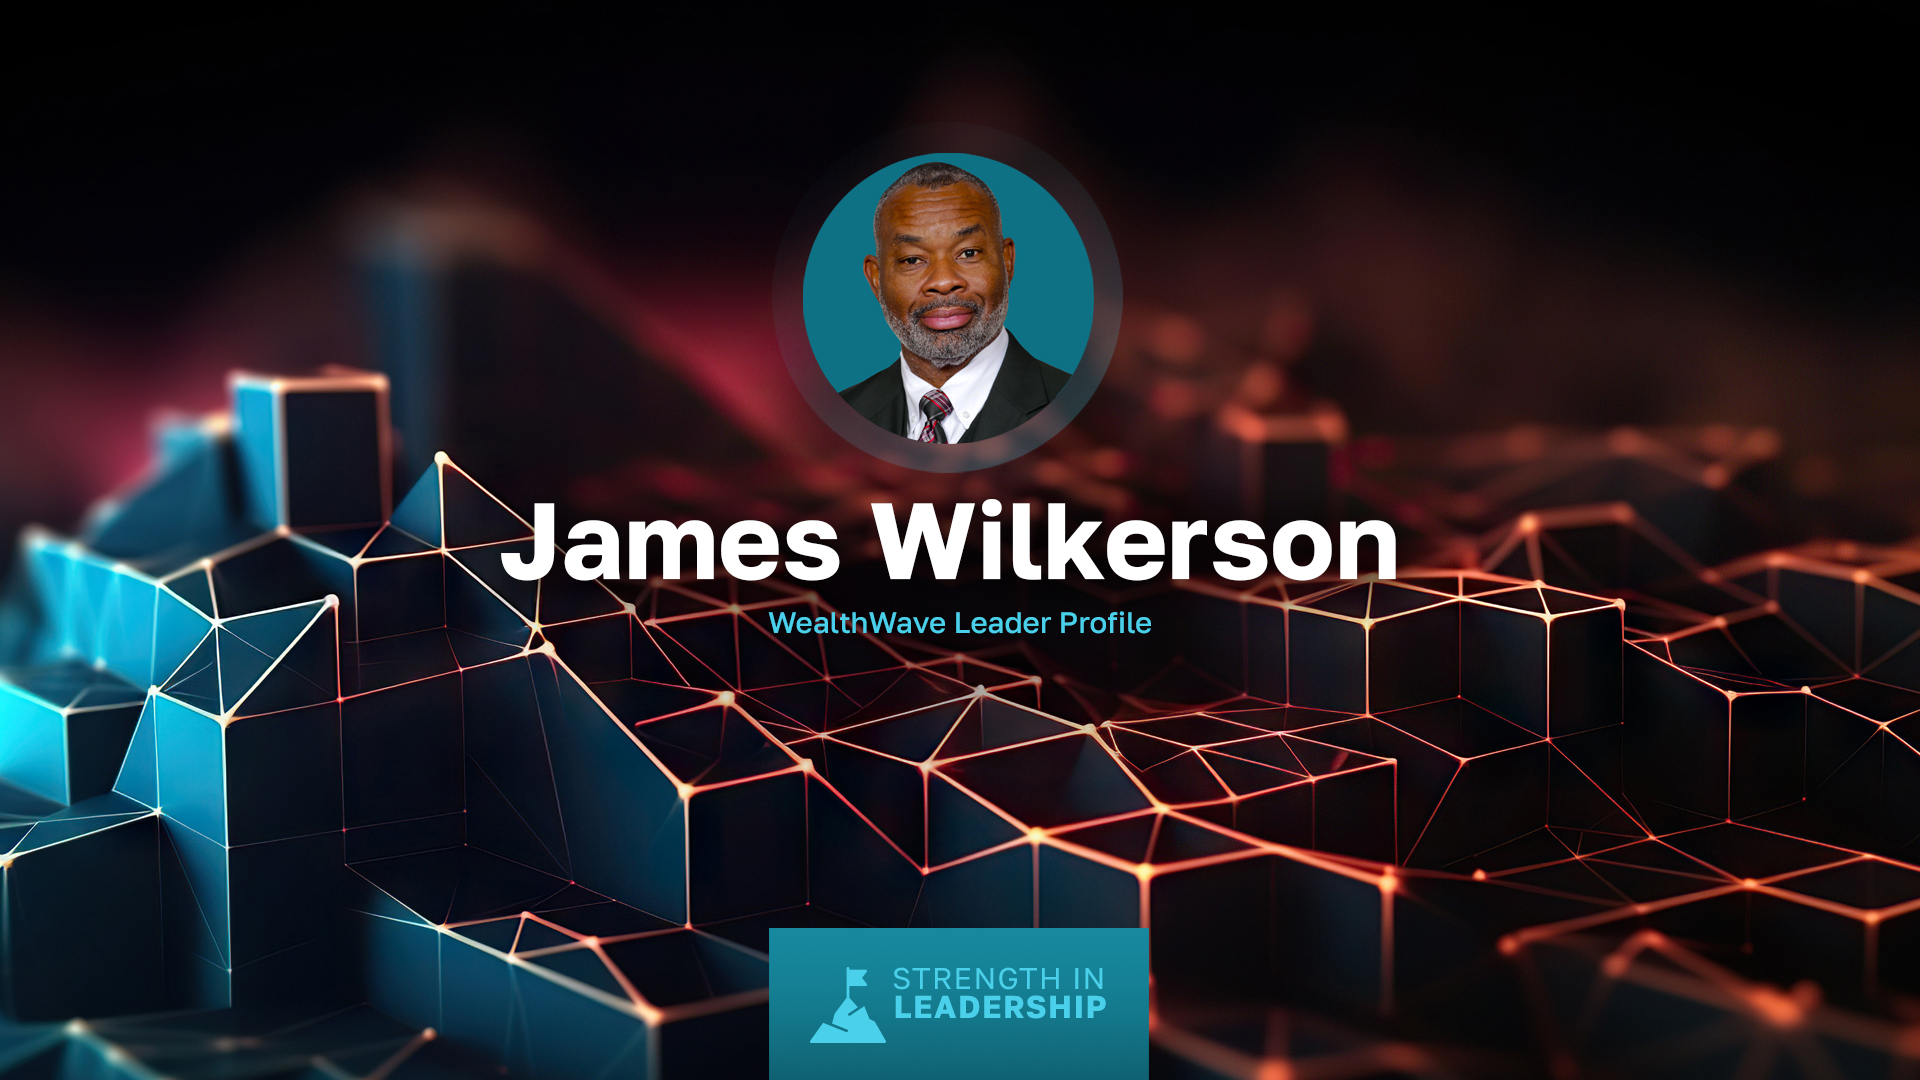 리더 프로필: 제임스 윌커슨 - 해군 장교에서 금융 업계 리더로 성장하다